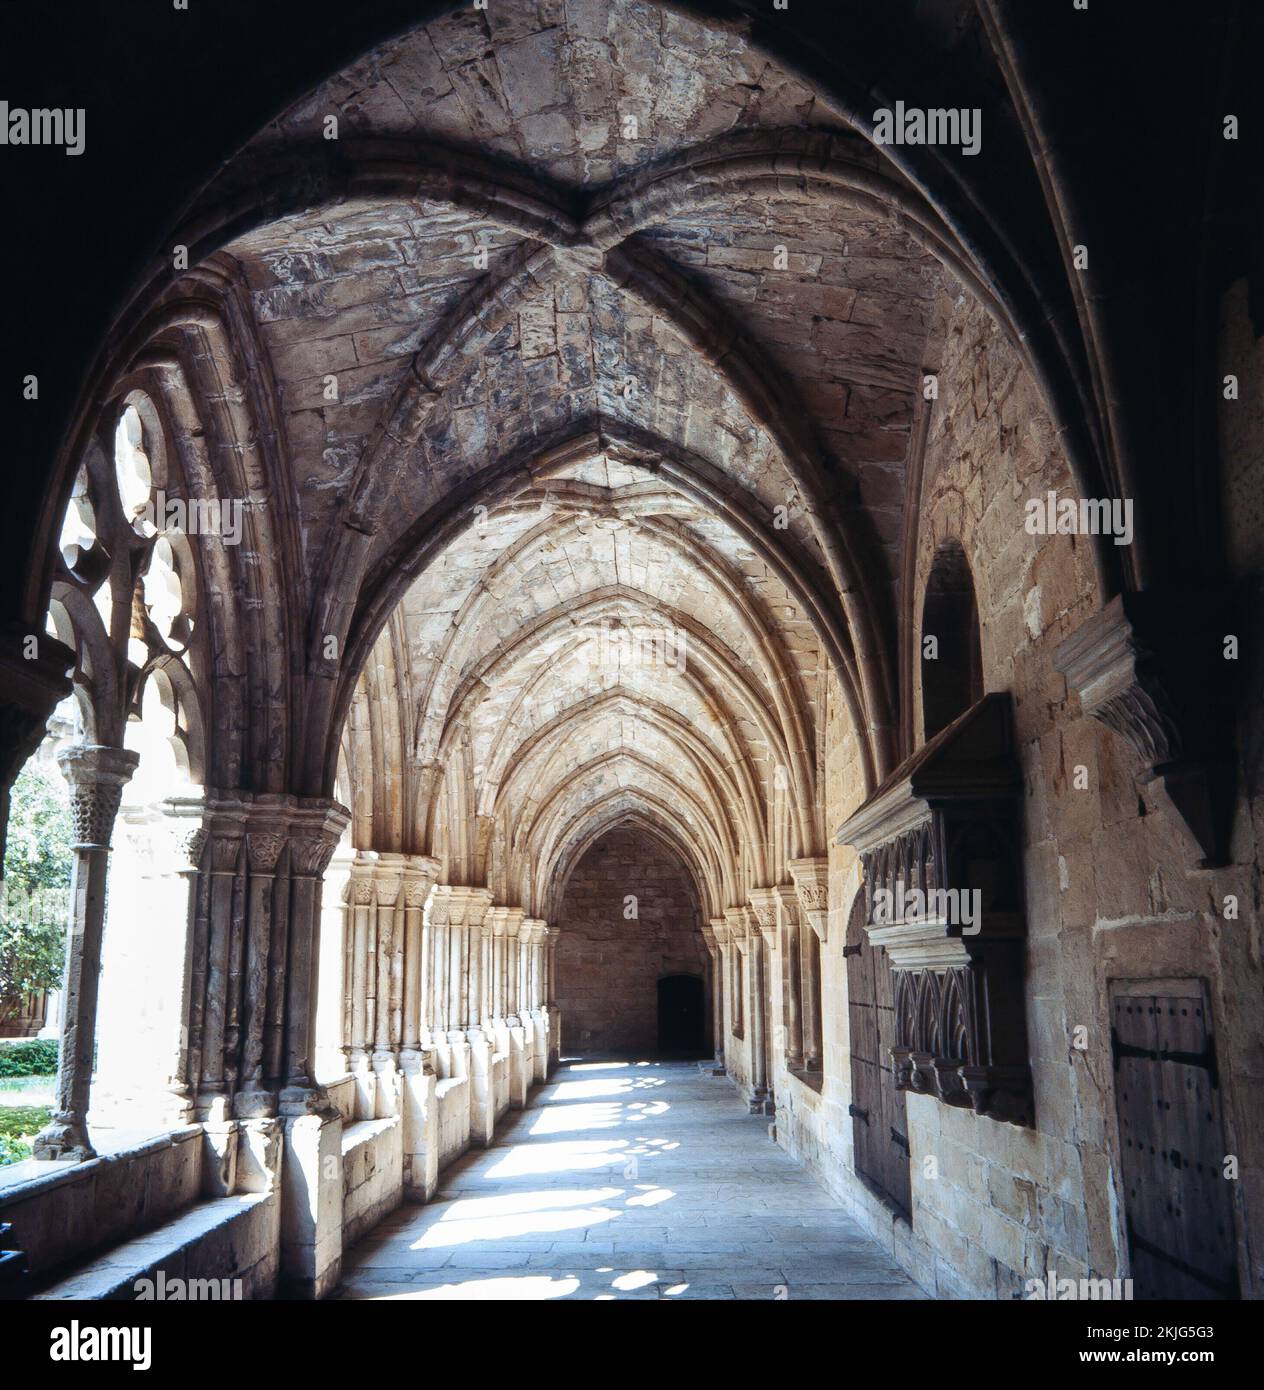 Monasterio de Santes Creus, Claustro. Tarragona. Stockfoto